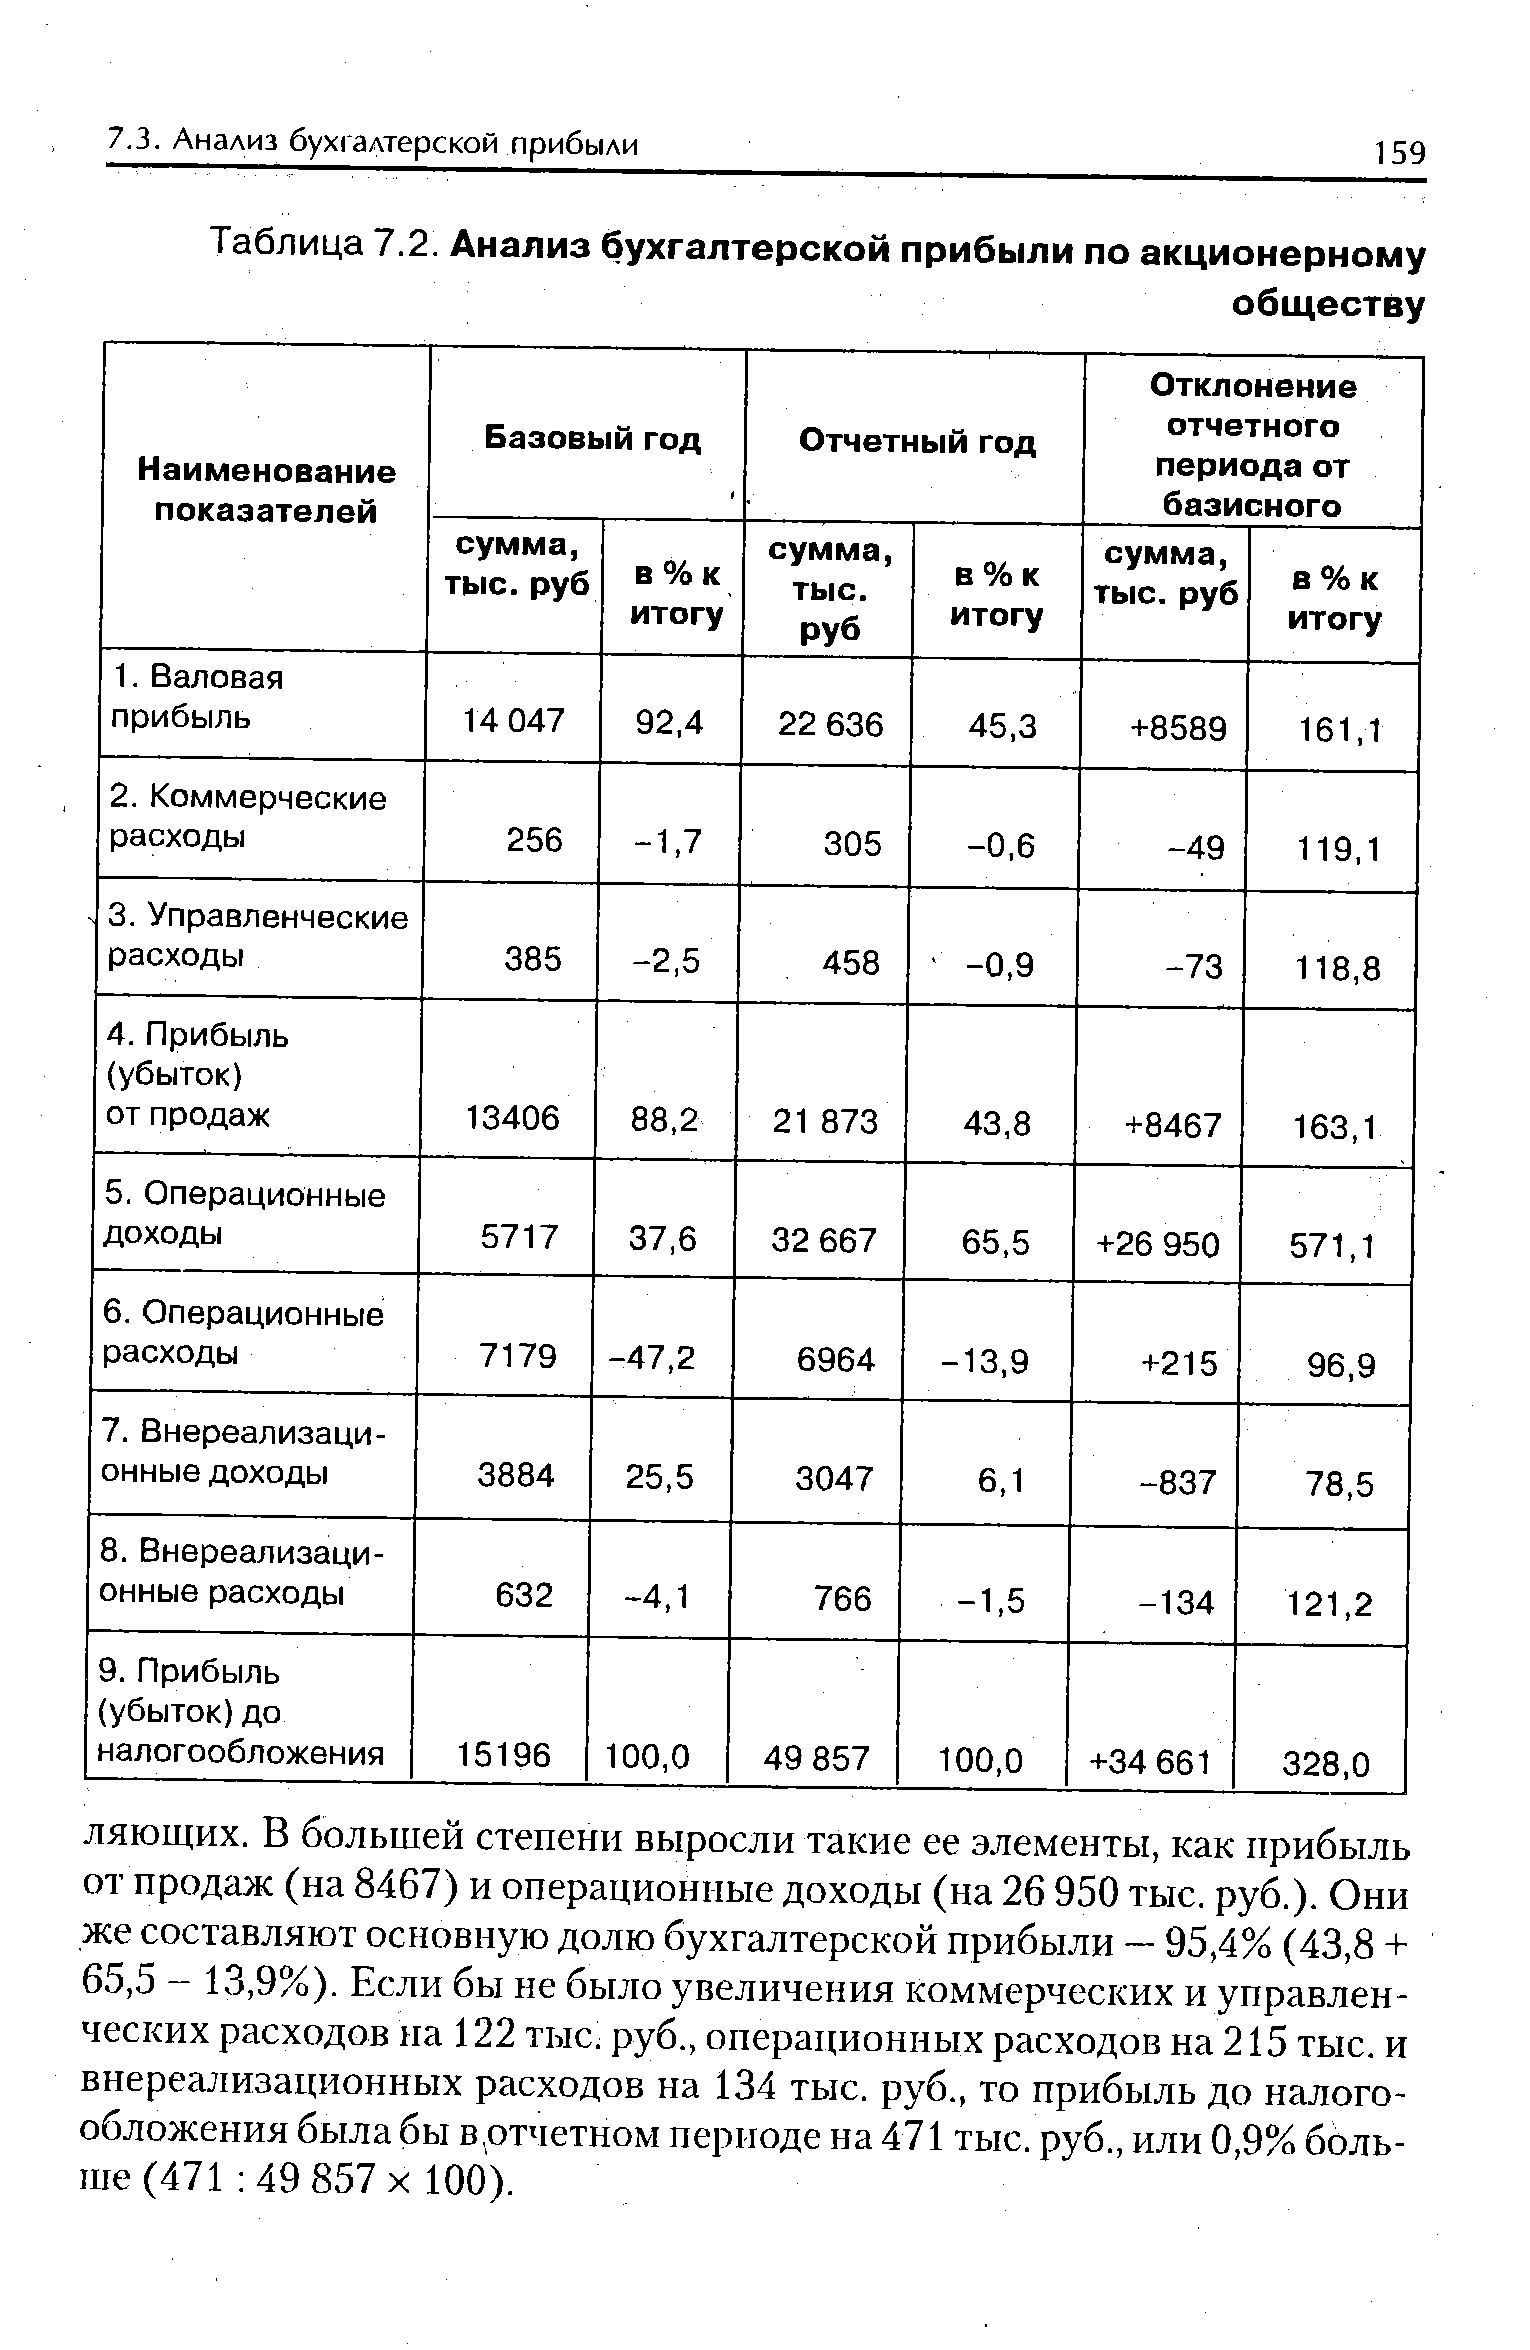 Таблица 7.2. Анализ бухгалтерской прибыли по акционерному
